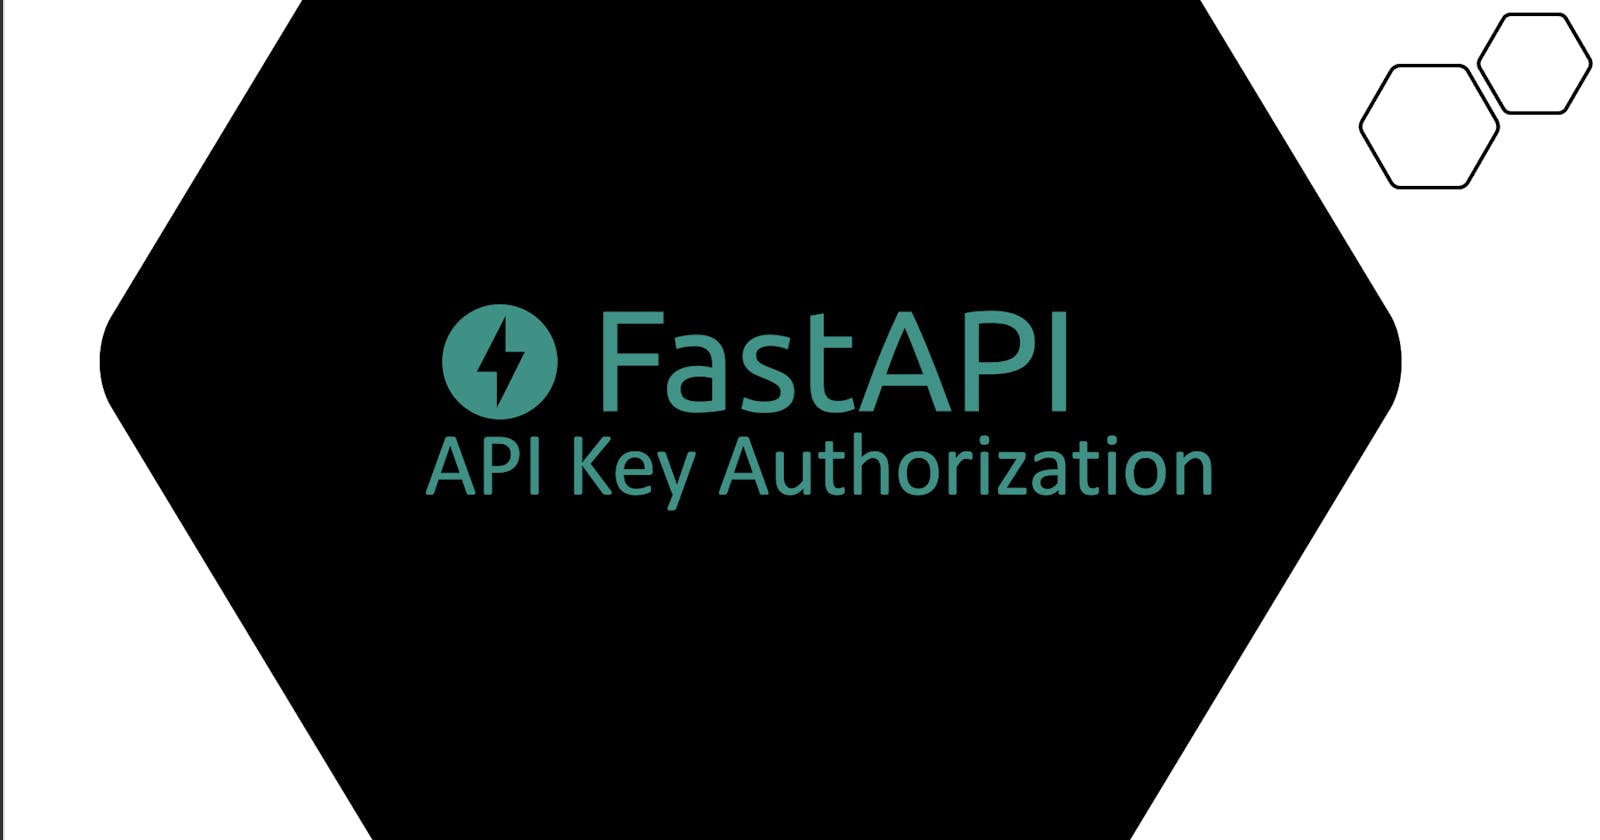 Fast API - API Key Authorization